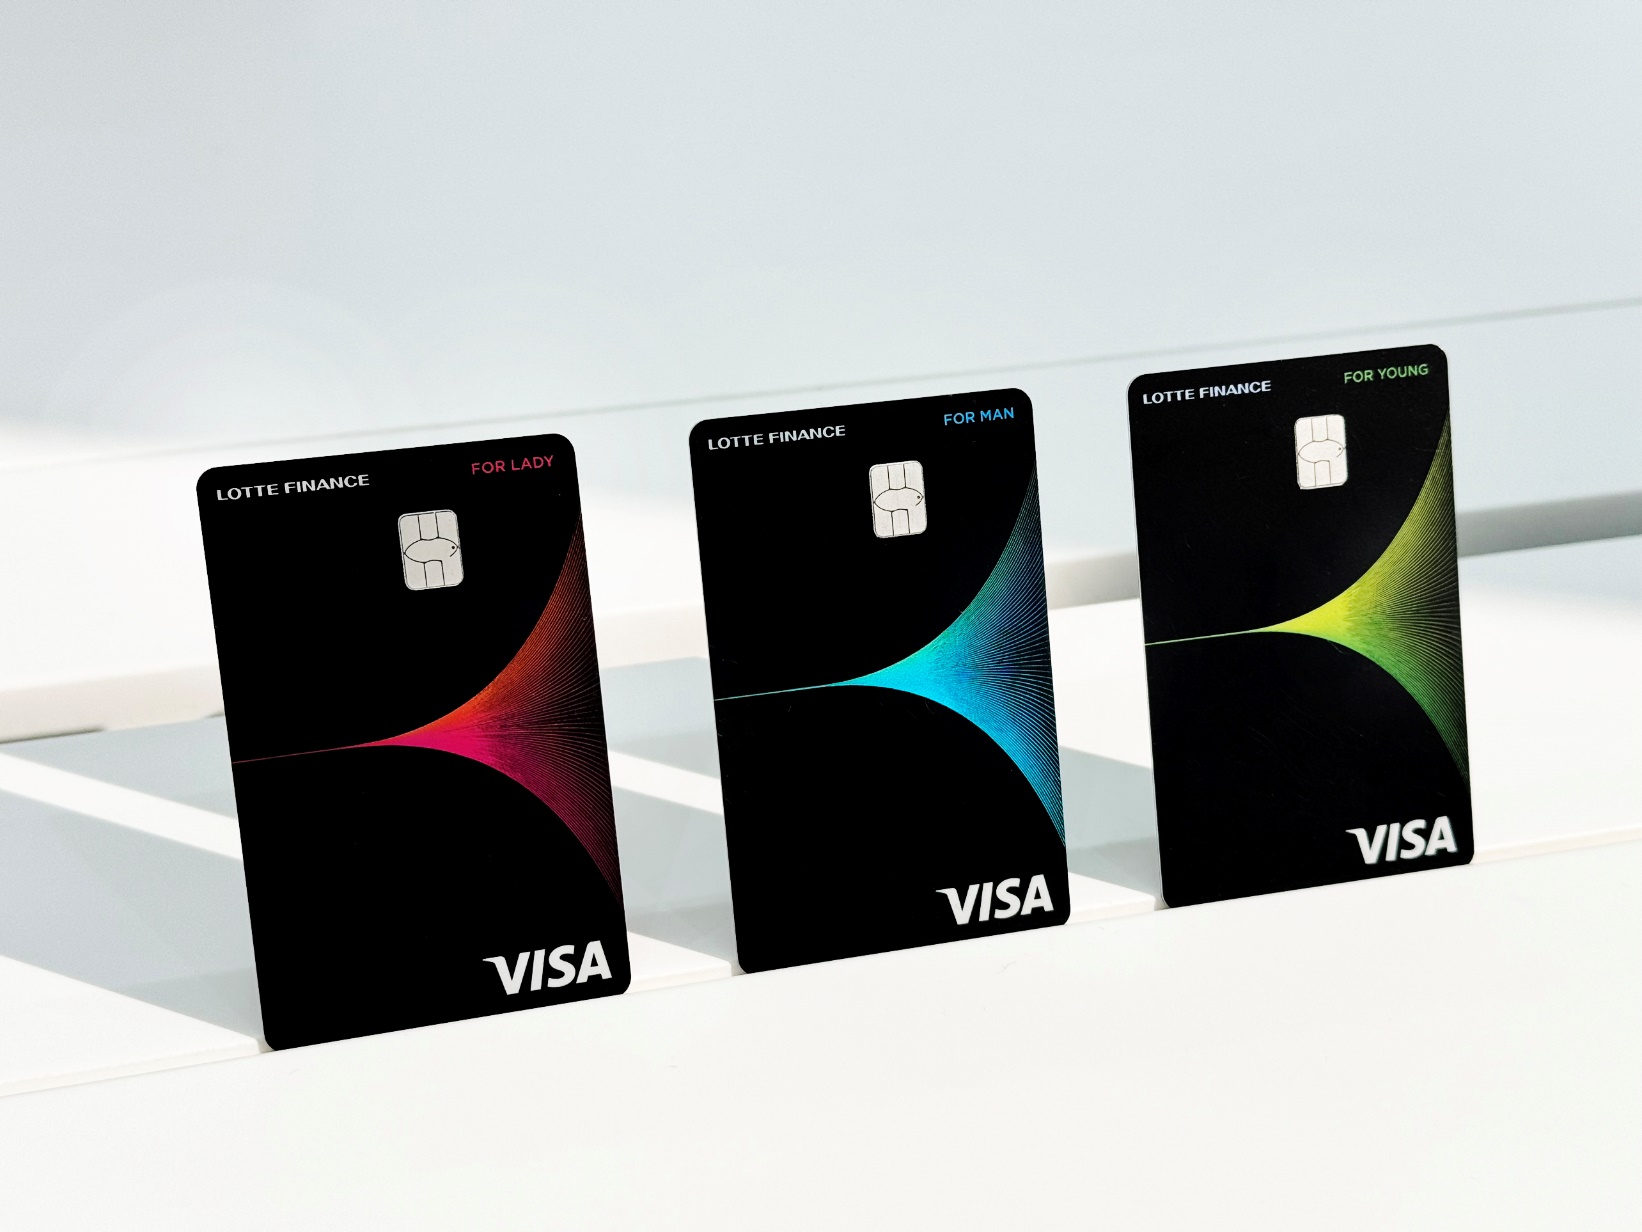 Chi tiêu thông minh, hoàn tiền đa dạng với BST thẻ tín dụng mới LOTTE Finance - Ảnh 1.